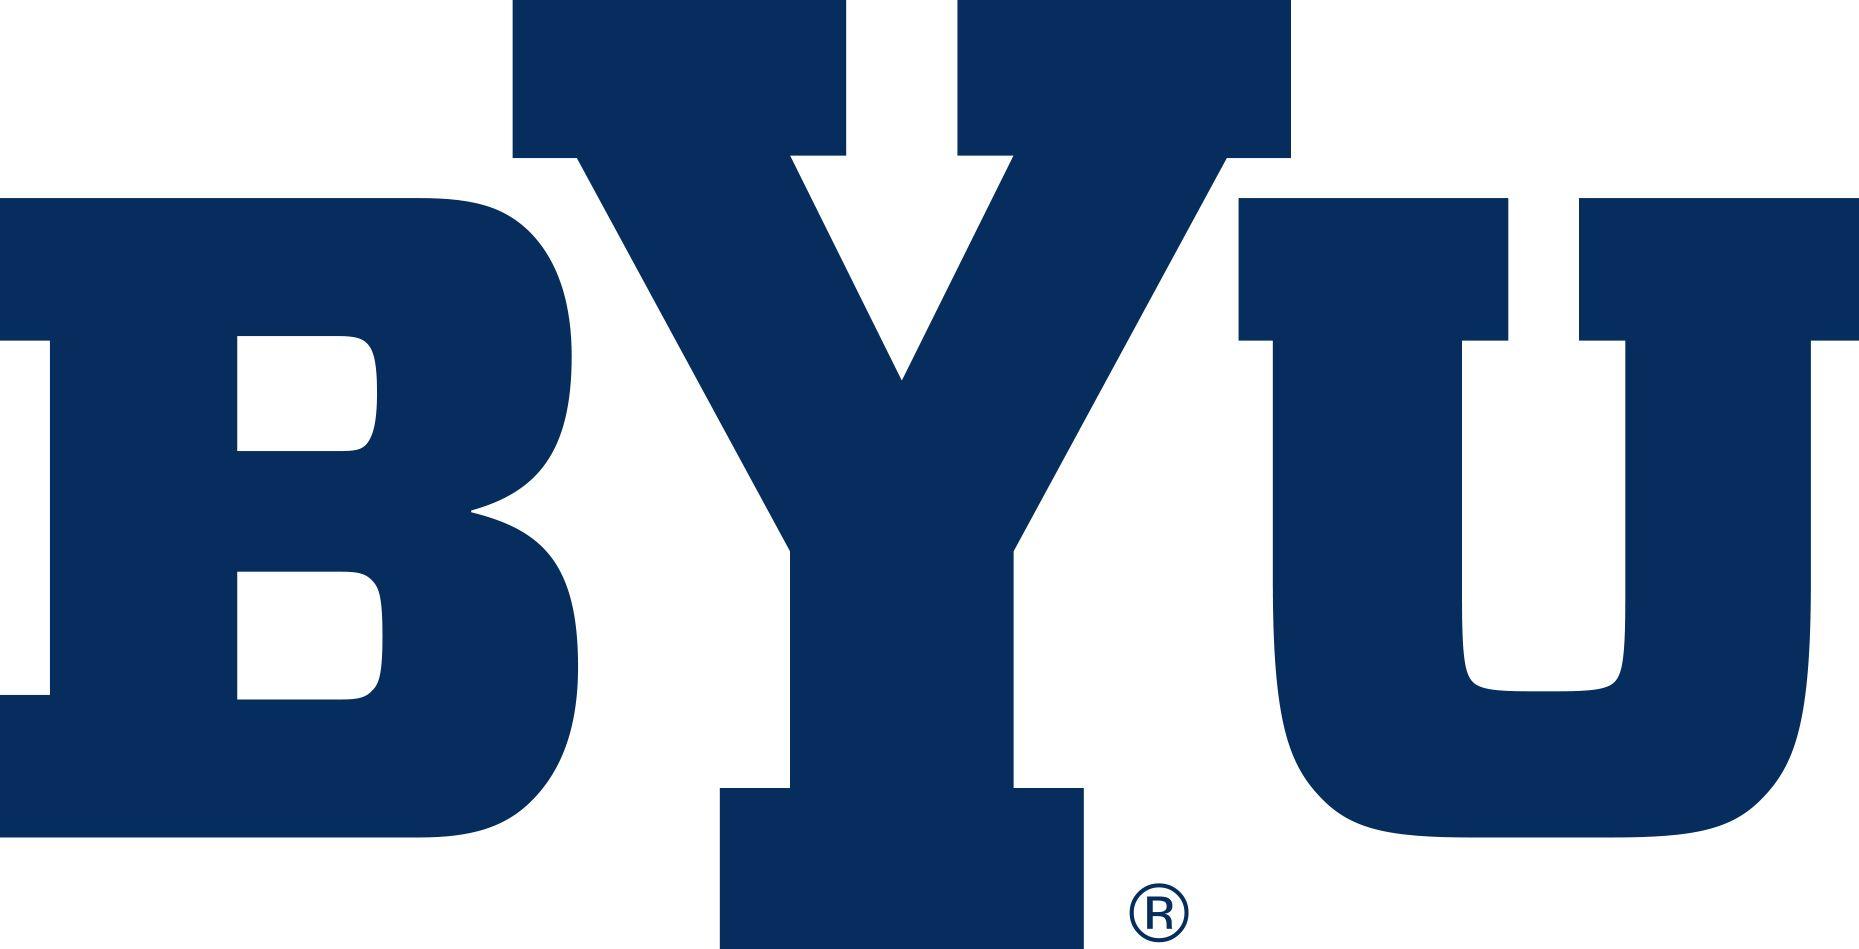 BYU Y Logo - BYU financial service shutdown result of security breach?